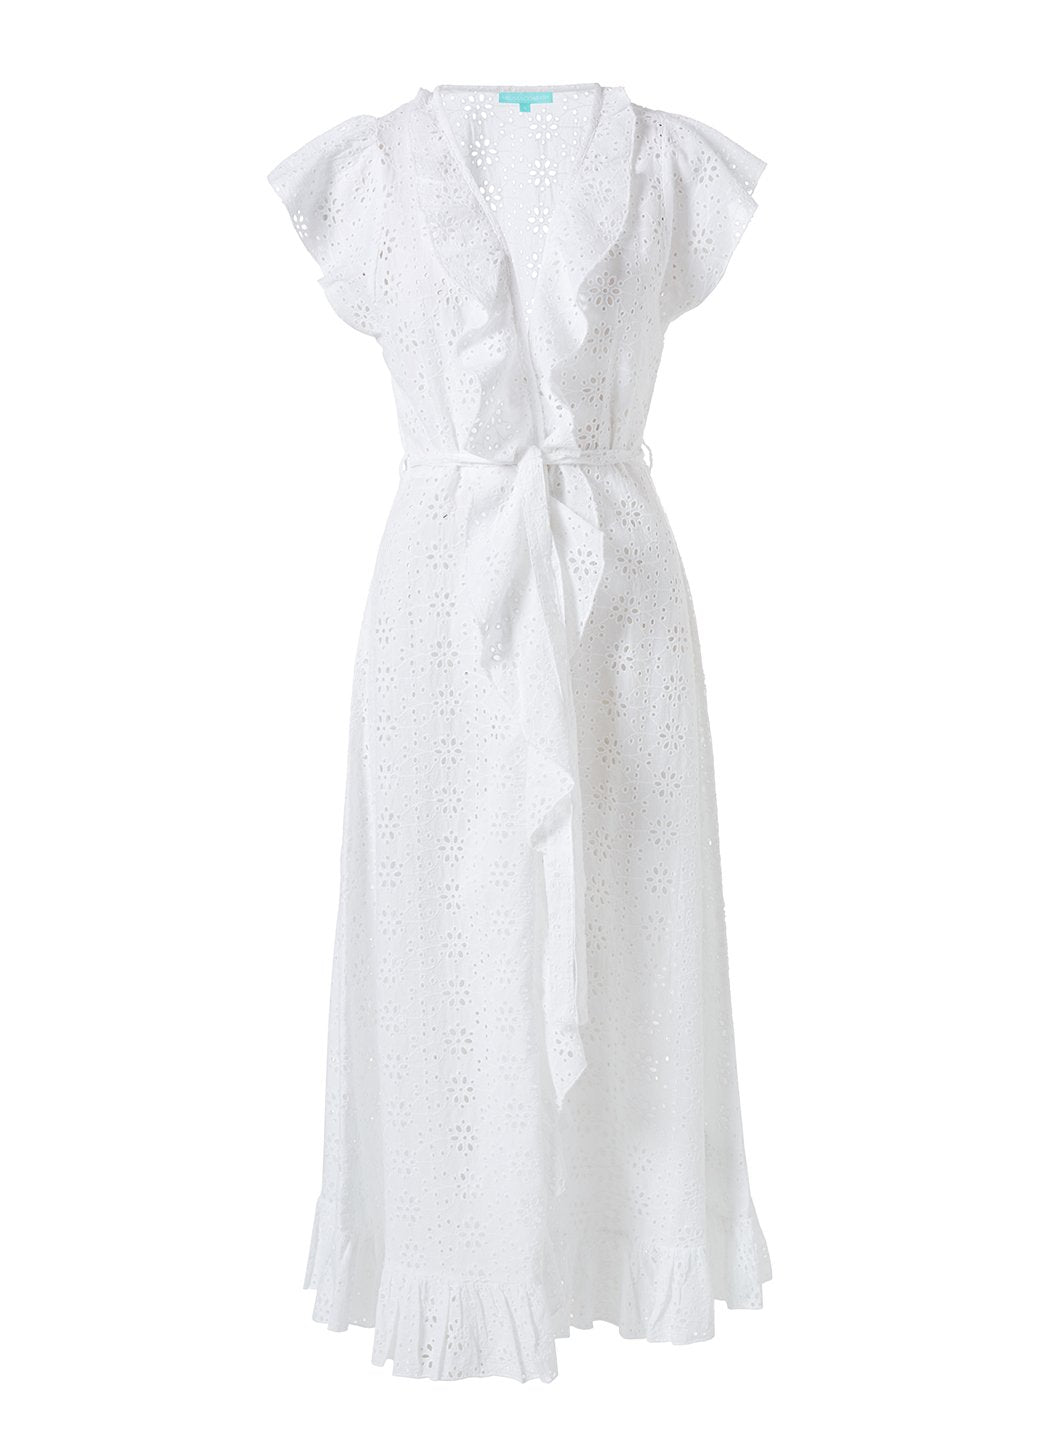 Brianna White Dress